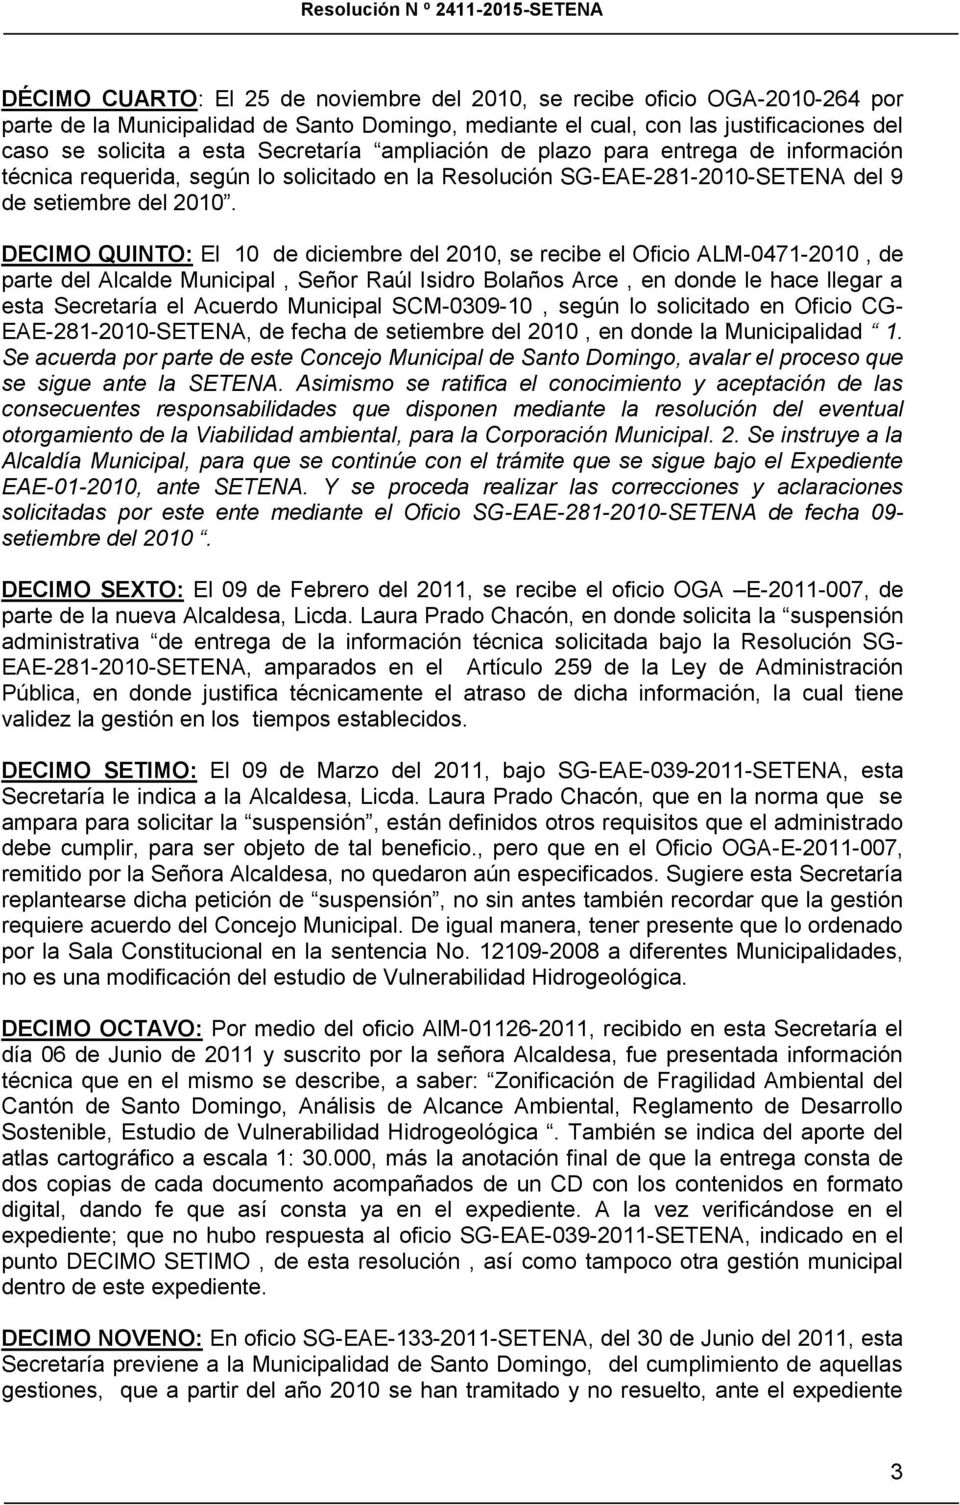 DECIMO QUINTO: El 10 de diciembre del 2010, se recibe el Oficio ALM-0471-2010, de parte del Alcalde Municipal, Señor Raúl Isidro Bolaños Arce, en donde le hace llegar a esta Secretaría el Acuerdo